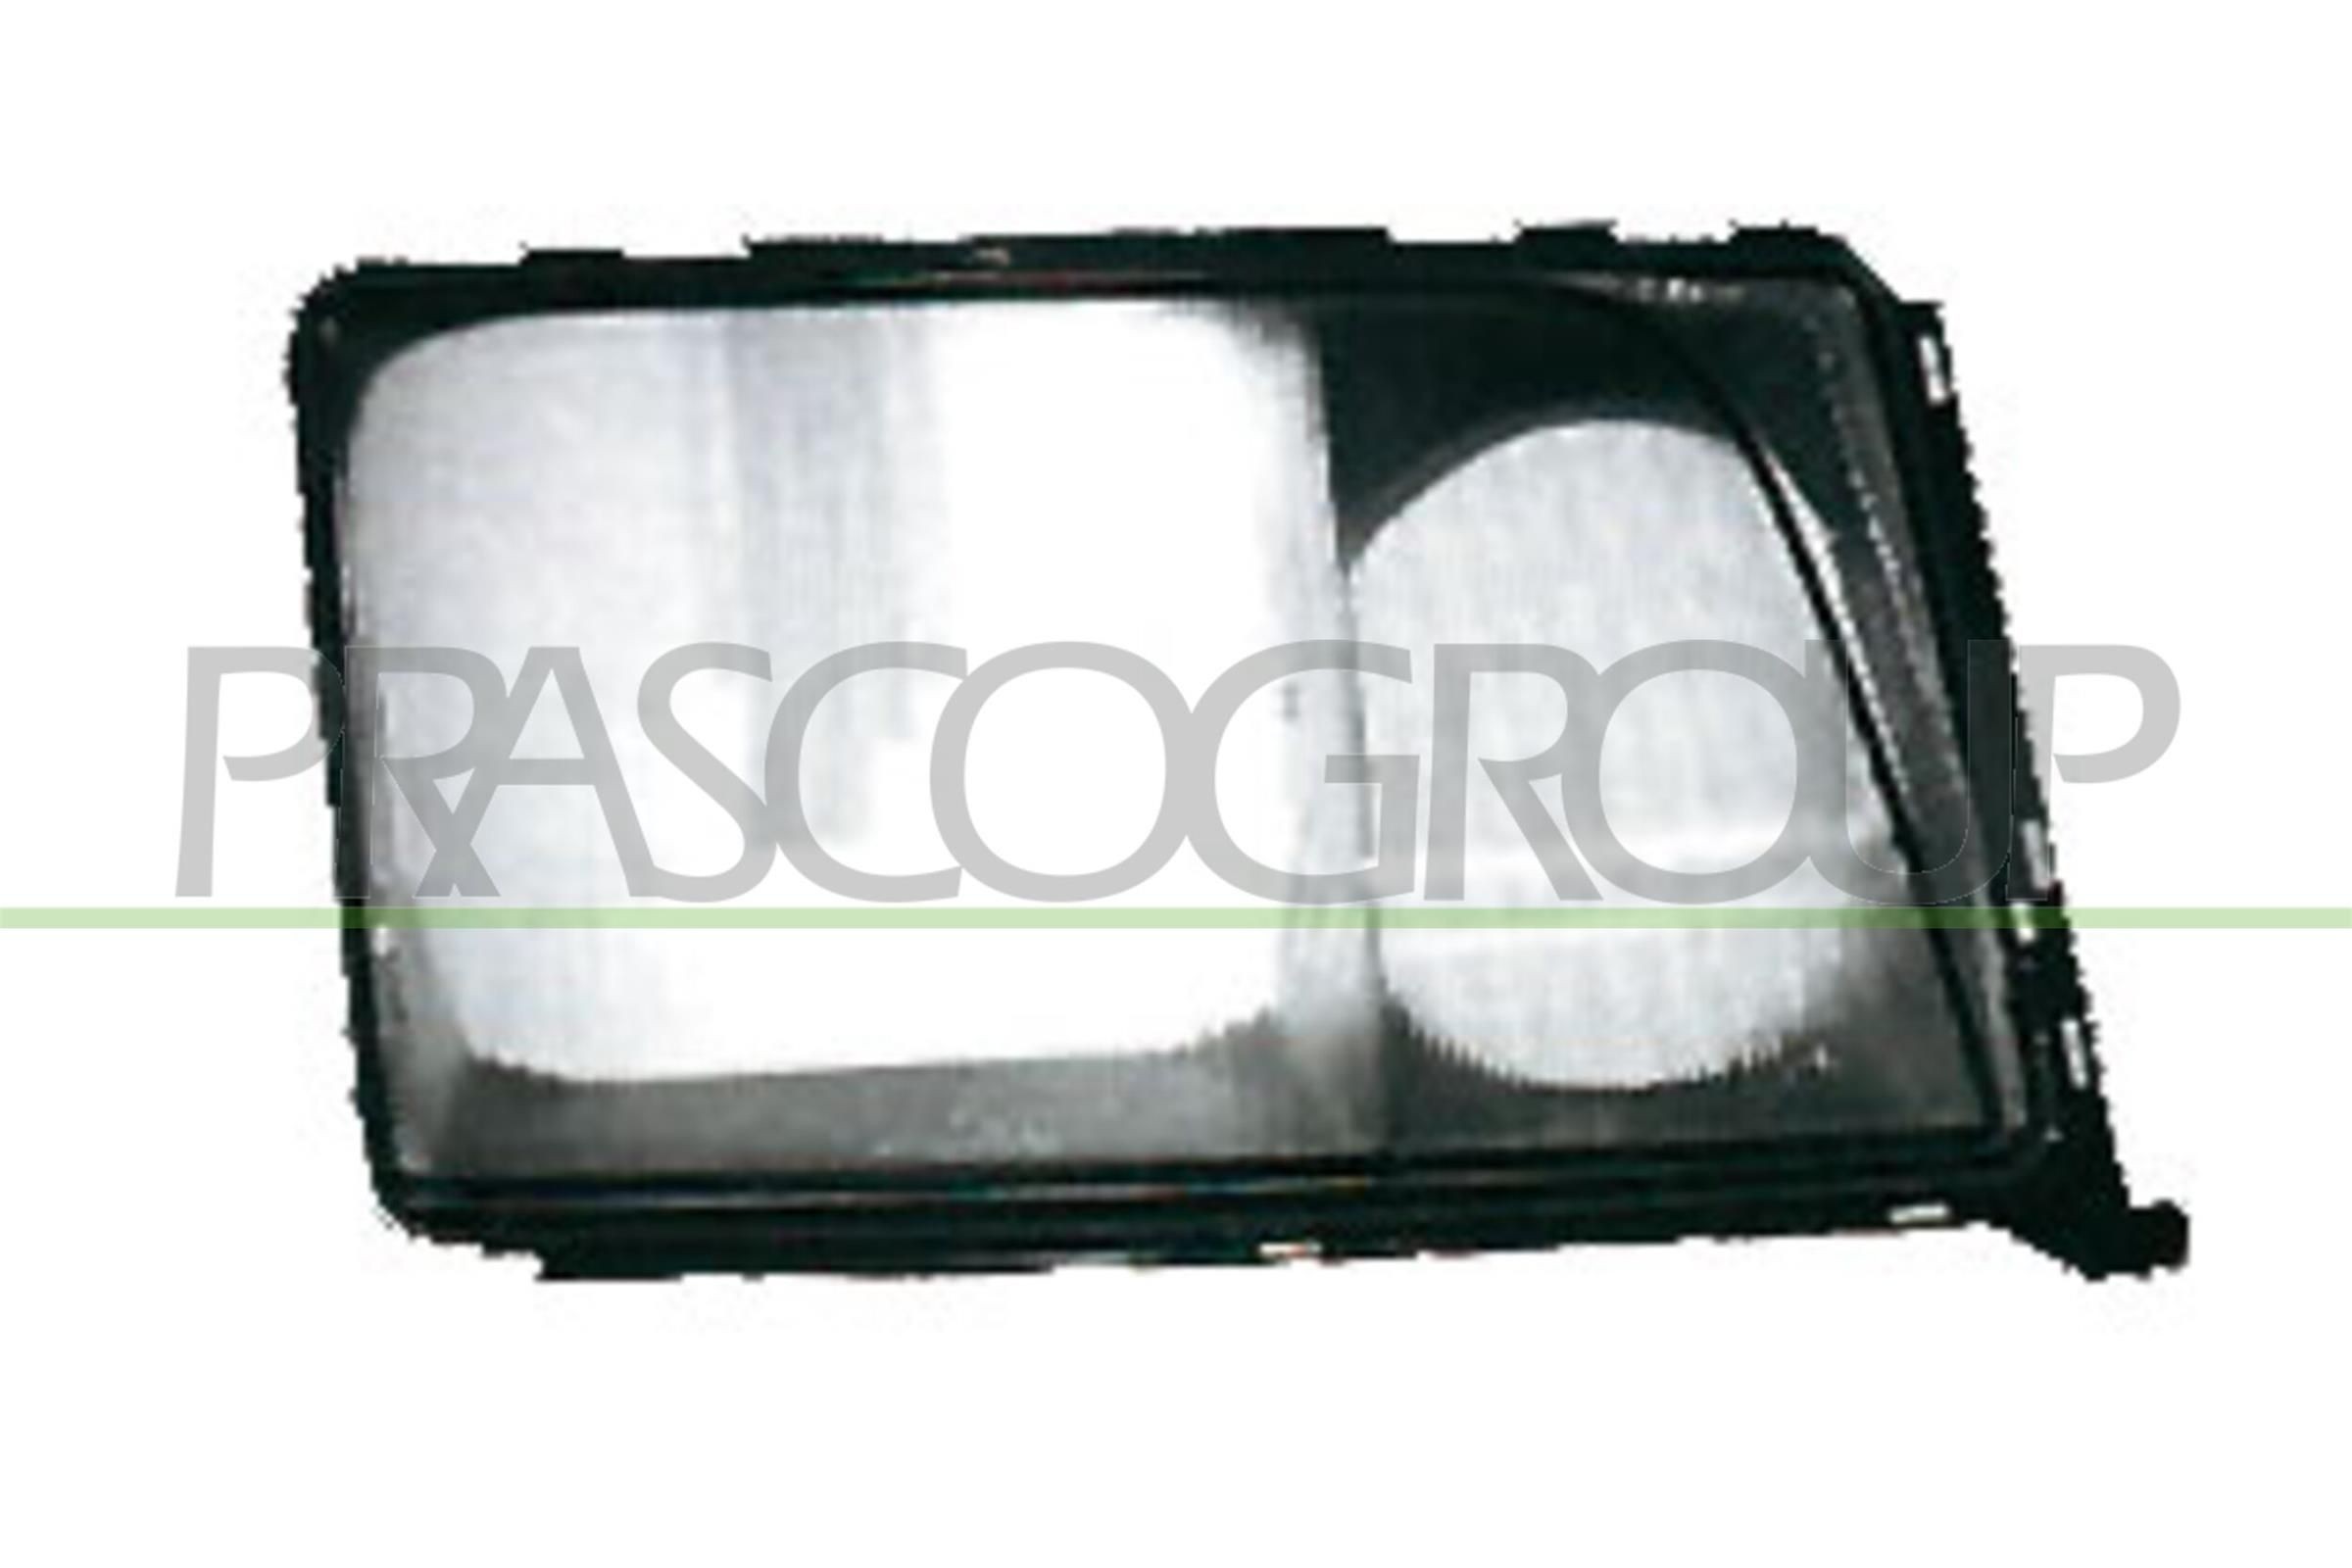 PRASCO Left Diffusing lens, headlight ME0335004 buy